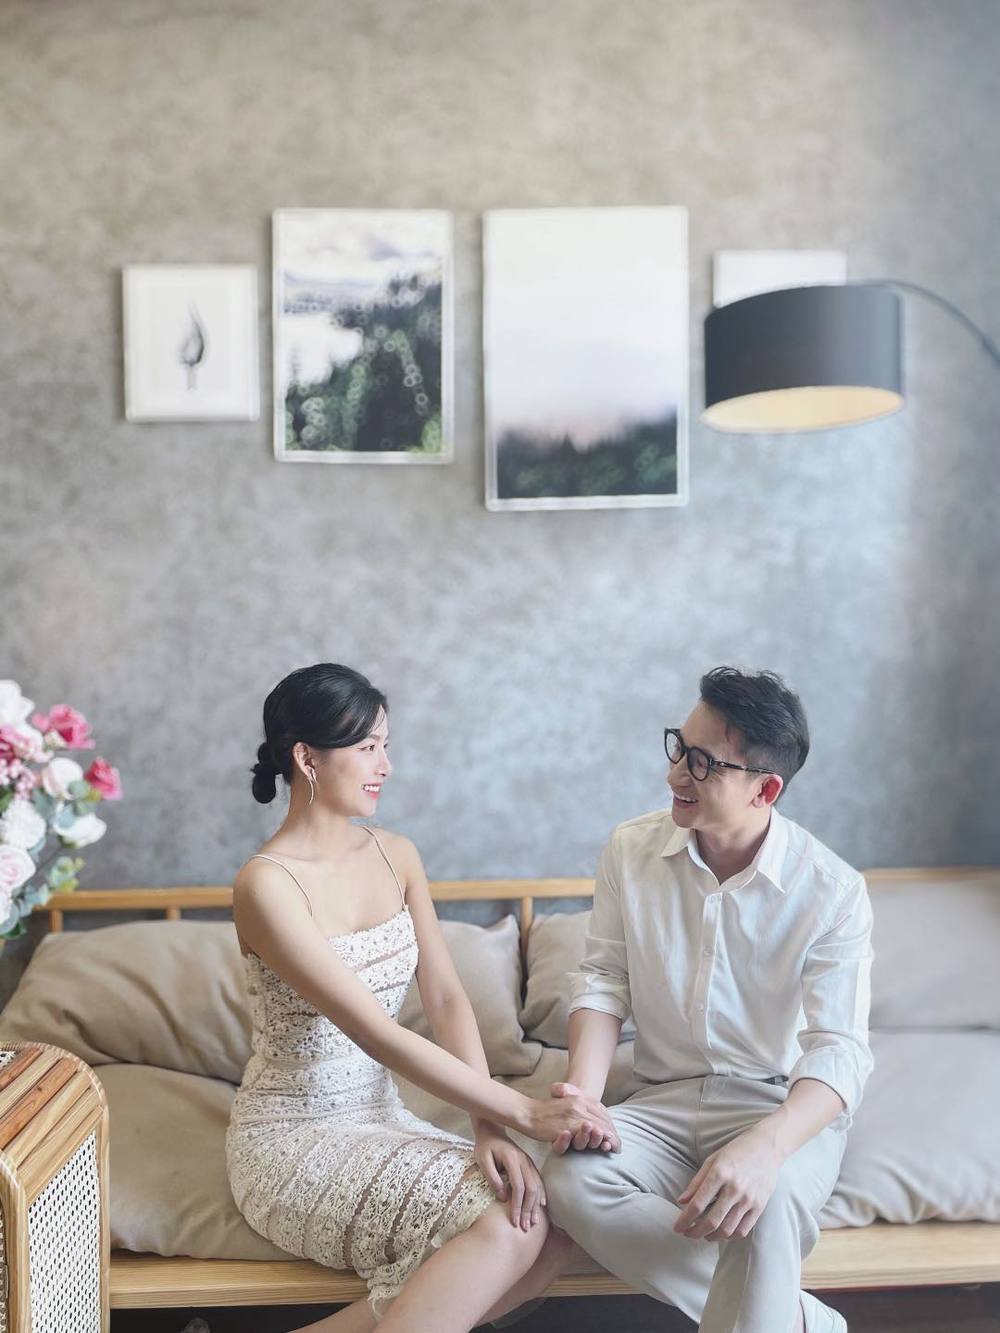 Mới cưới, vợ hot girl của Phan Mạnh Quỳnh bị 'gạ', còn hứa cho nhà 4 triệu đô - Ảnh 3